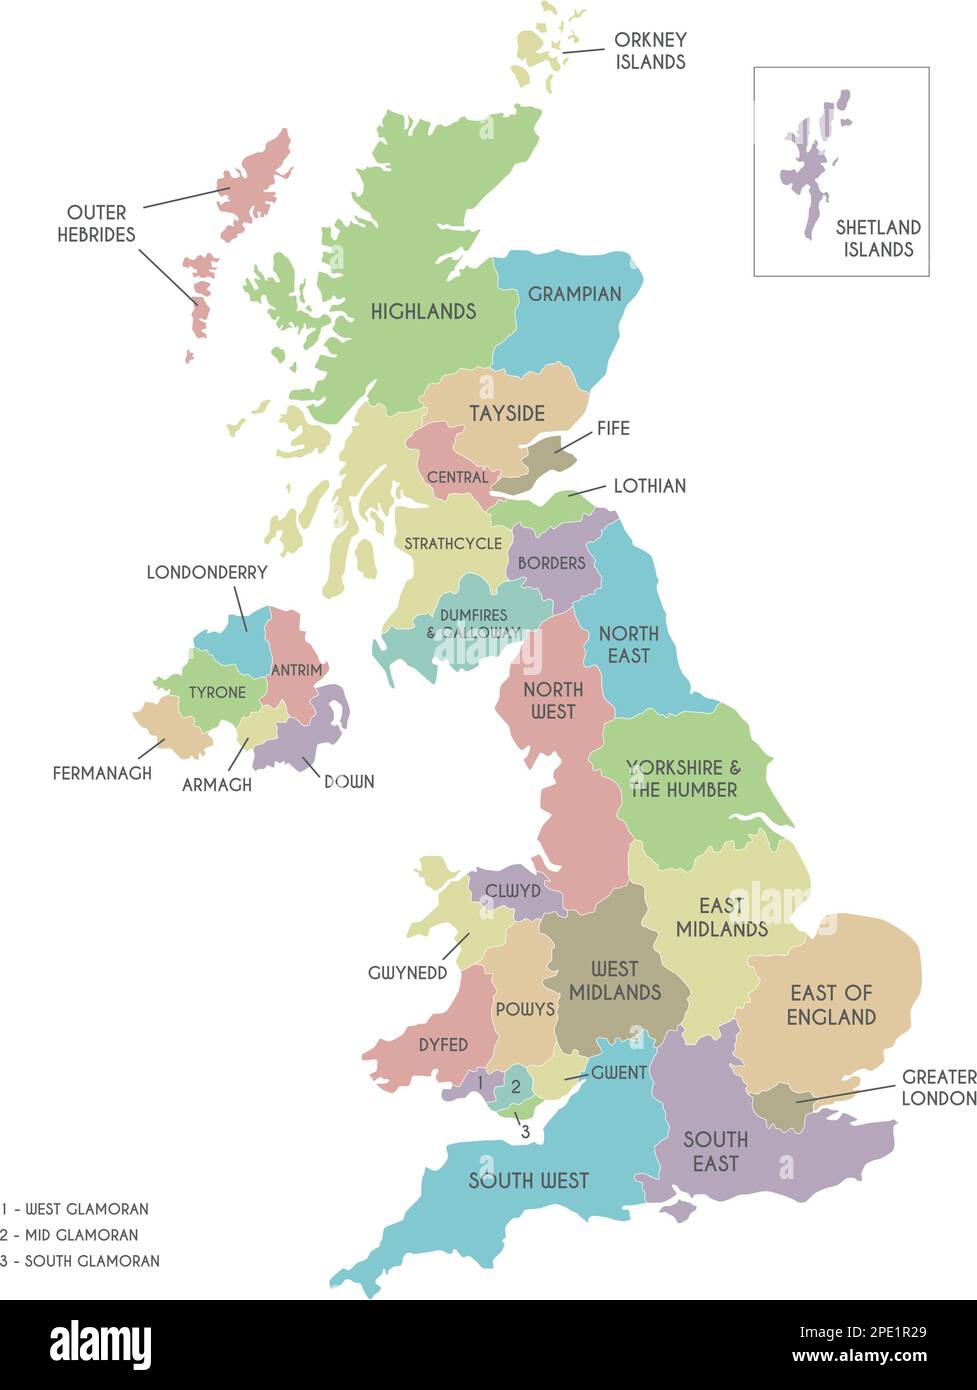 Mappa vettoriale del Regno Unito con divisioni amministrative. Livelli modificabili ed etichettati in modo chiaro. Illustrazione Vettoriale